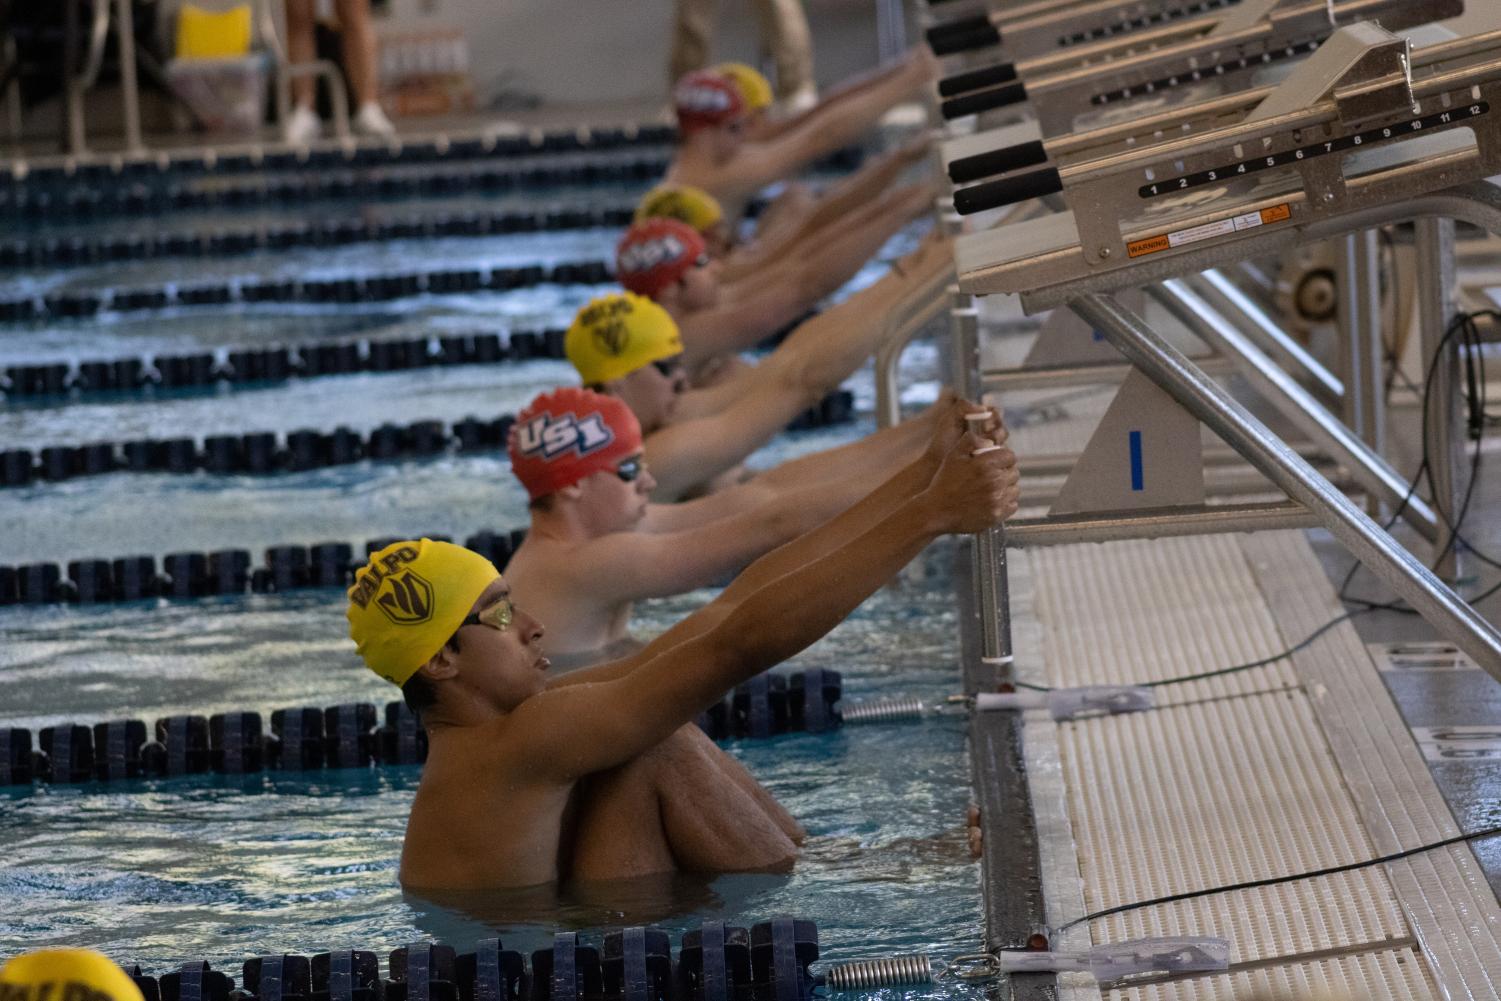 The men’s swim team prepares to compete against Valparaiso’s team in the Aquatic Center Oct. 1, 2022.